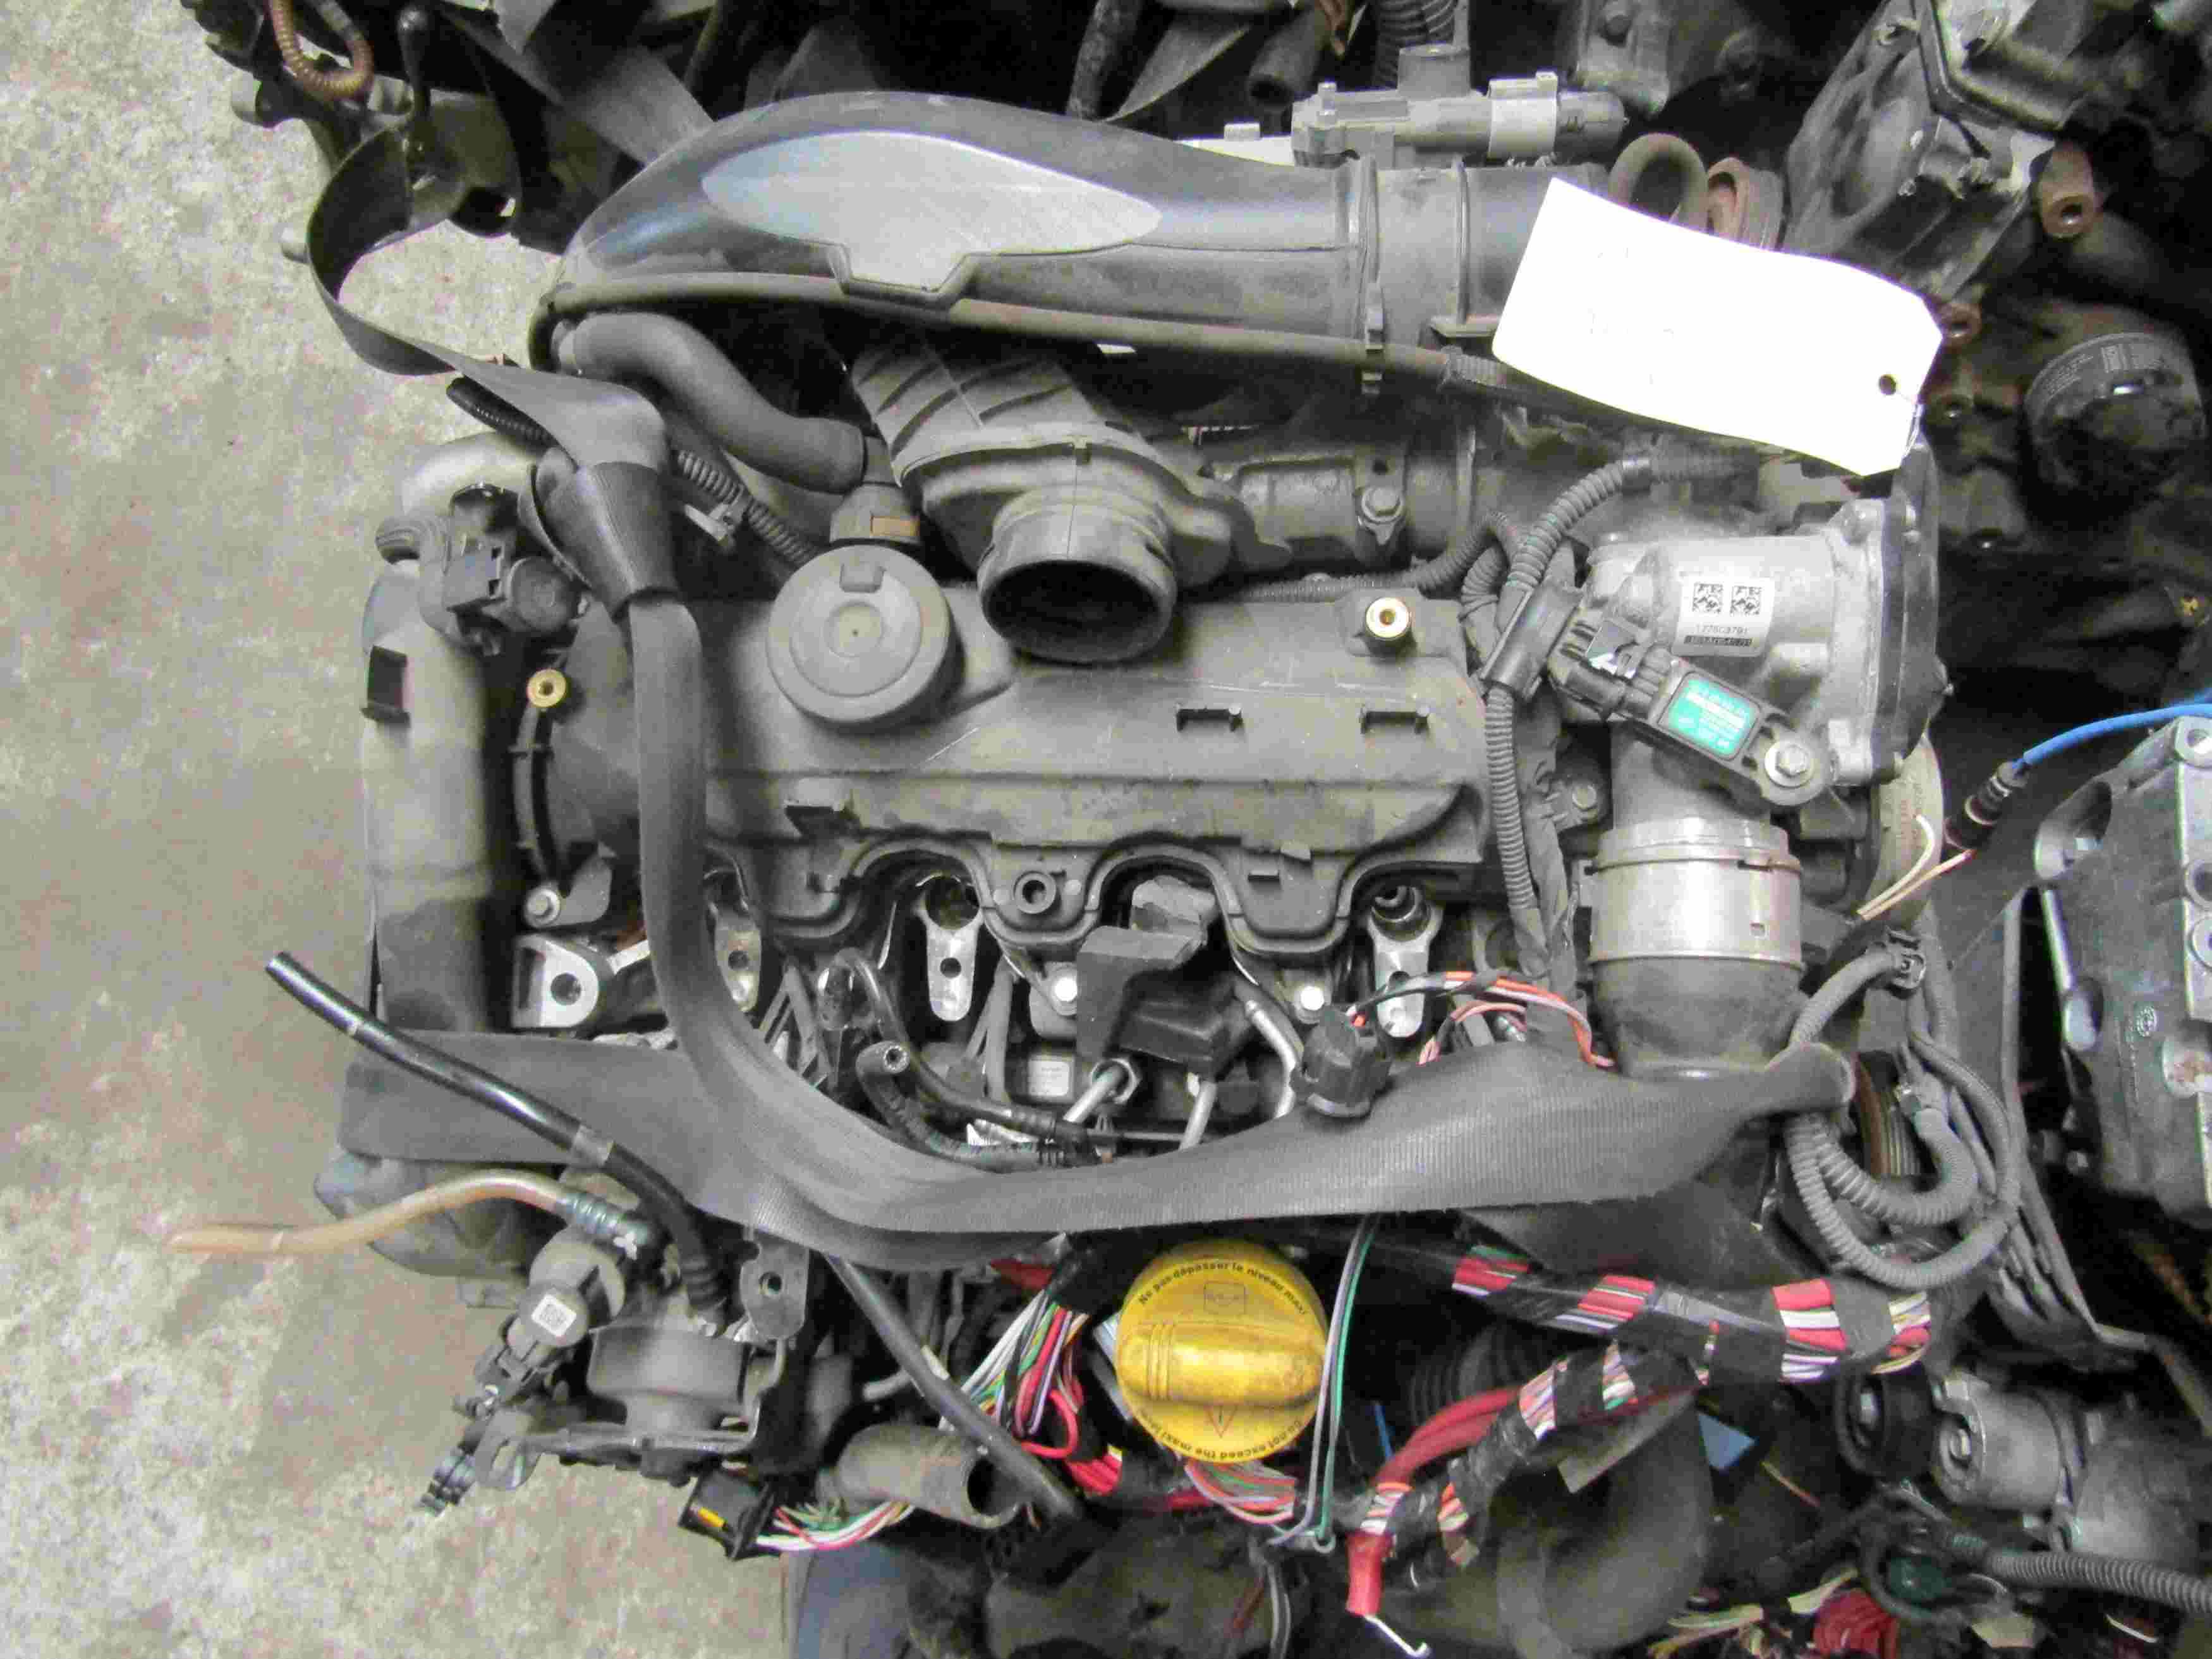 Moteur RENAULT Clio 4 1.5 dCi 75CV
07.2015

Type moteur : K9K612 (SANS INJECTEURS)
121380 Km

Vendu sans alternateur, démarreur, compresseur de clim
Garanti(e) 12 mois
Frais de Port sur devis